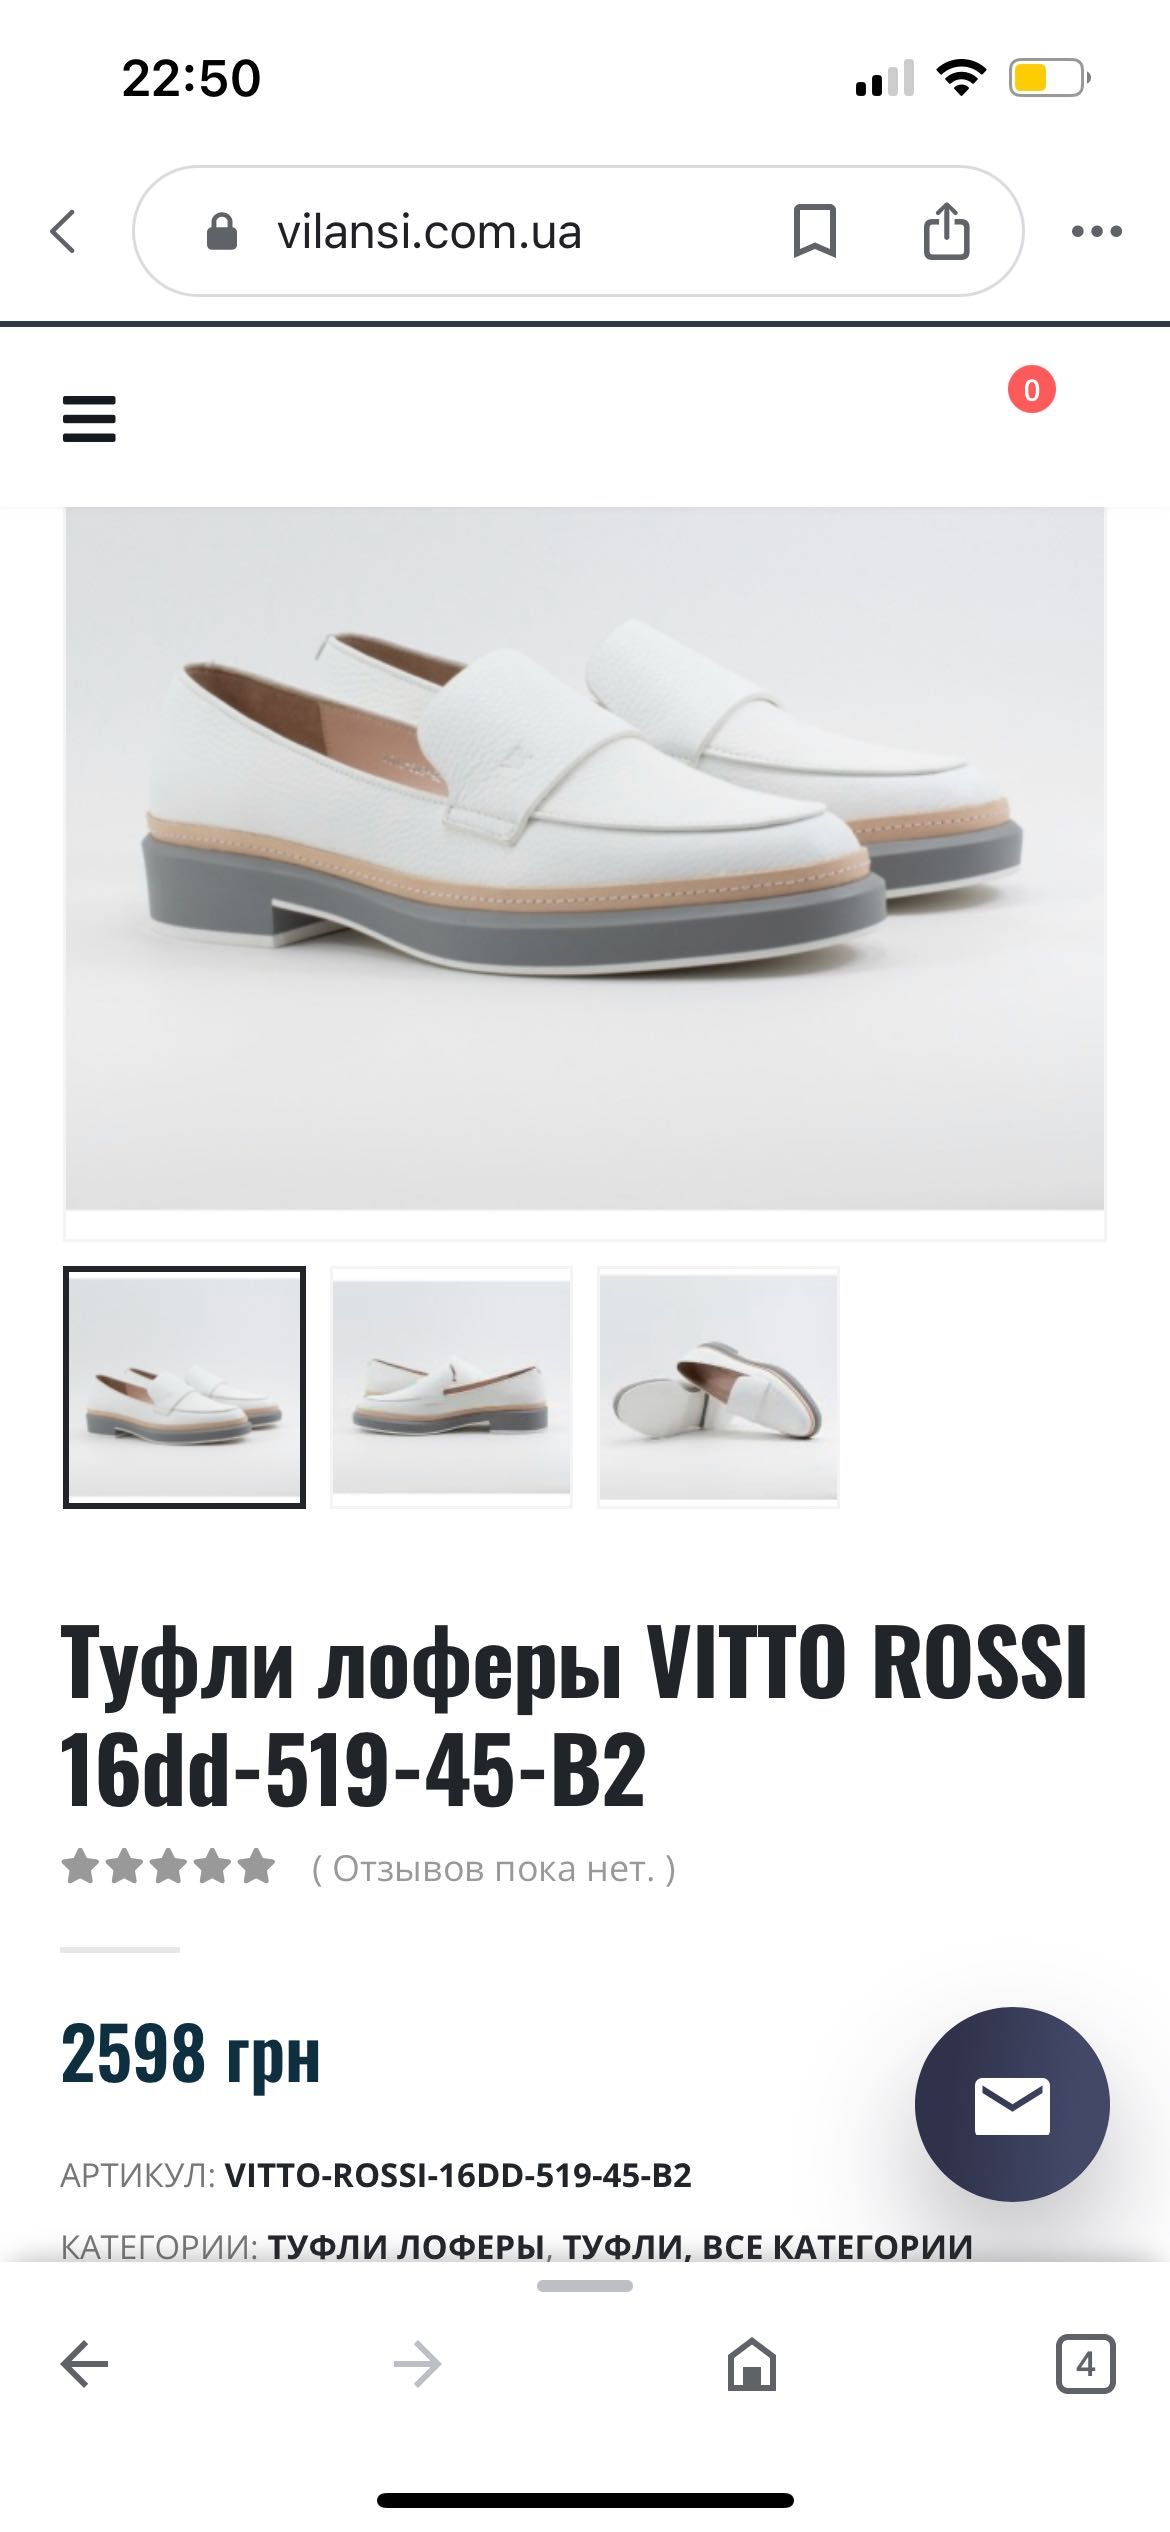 Обувь vitro Rossi